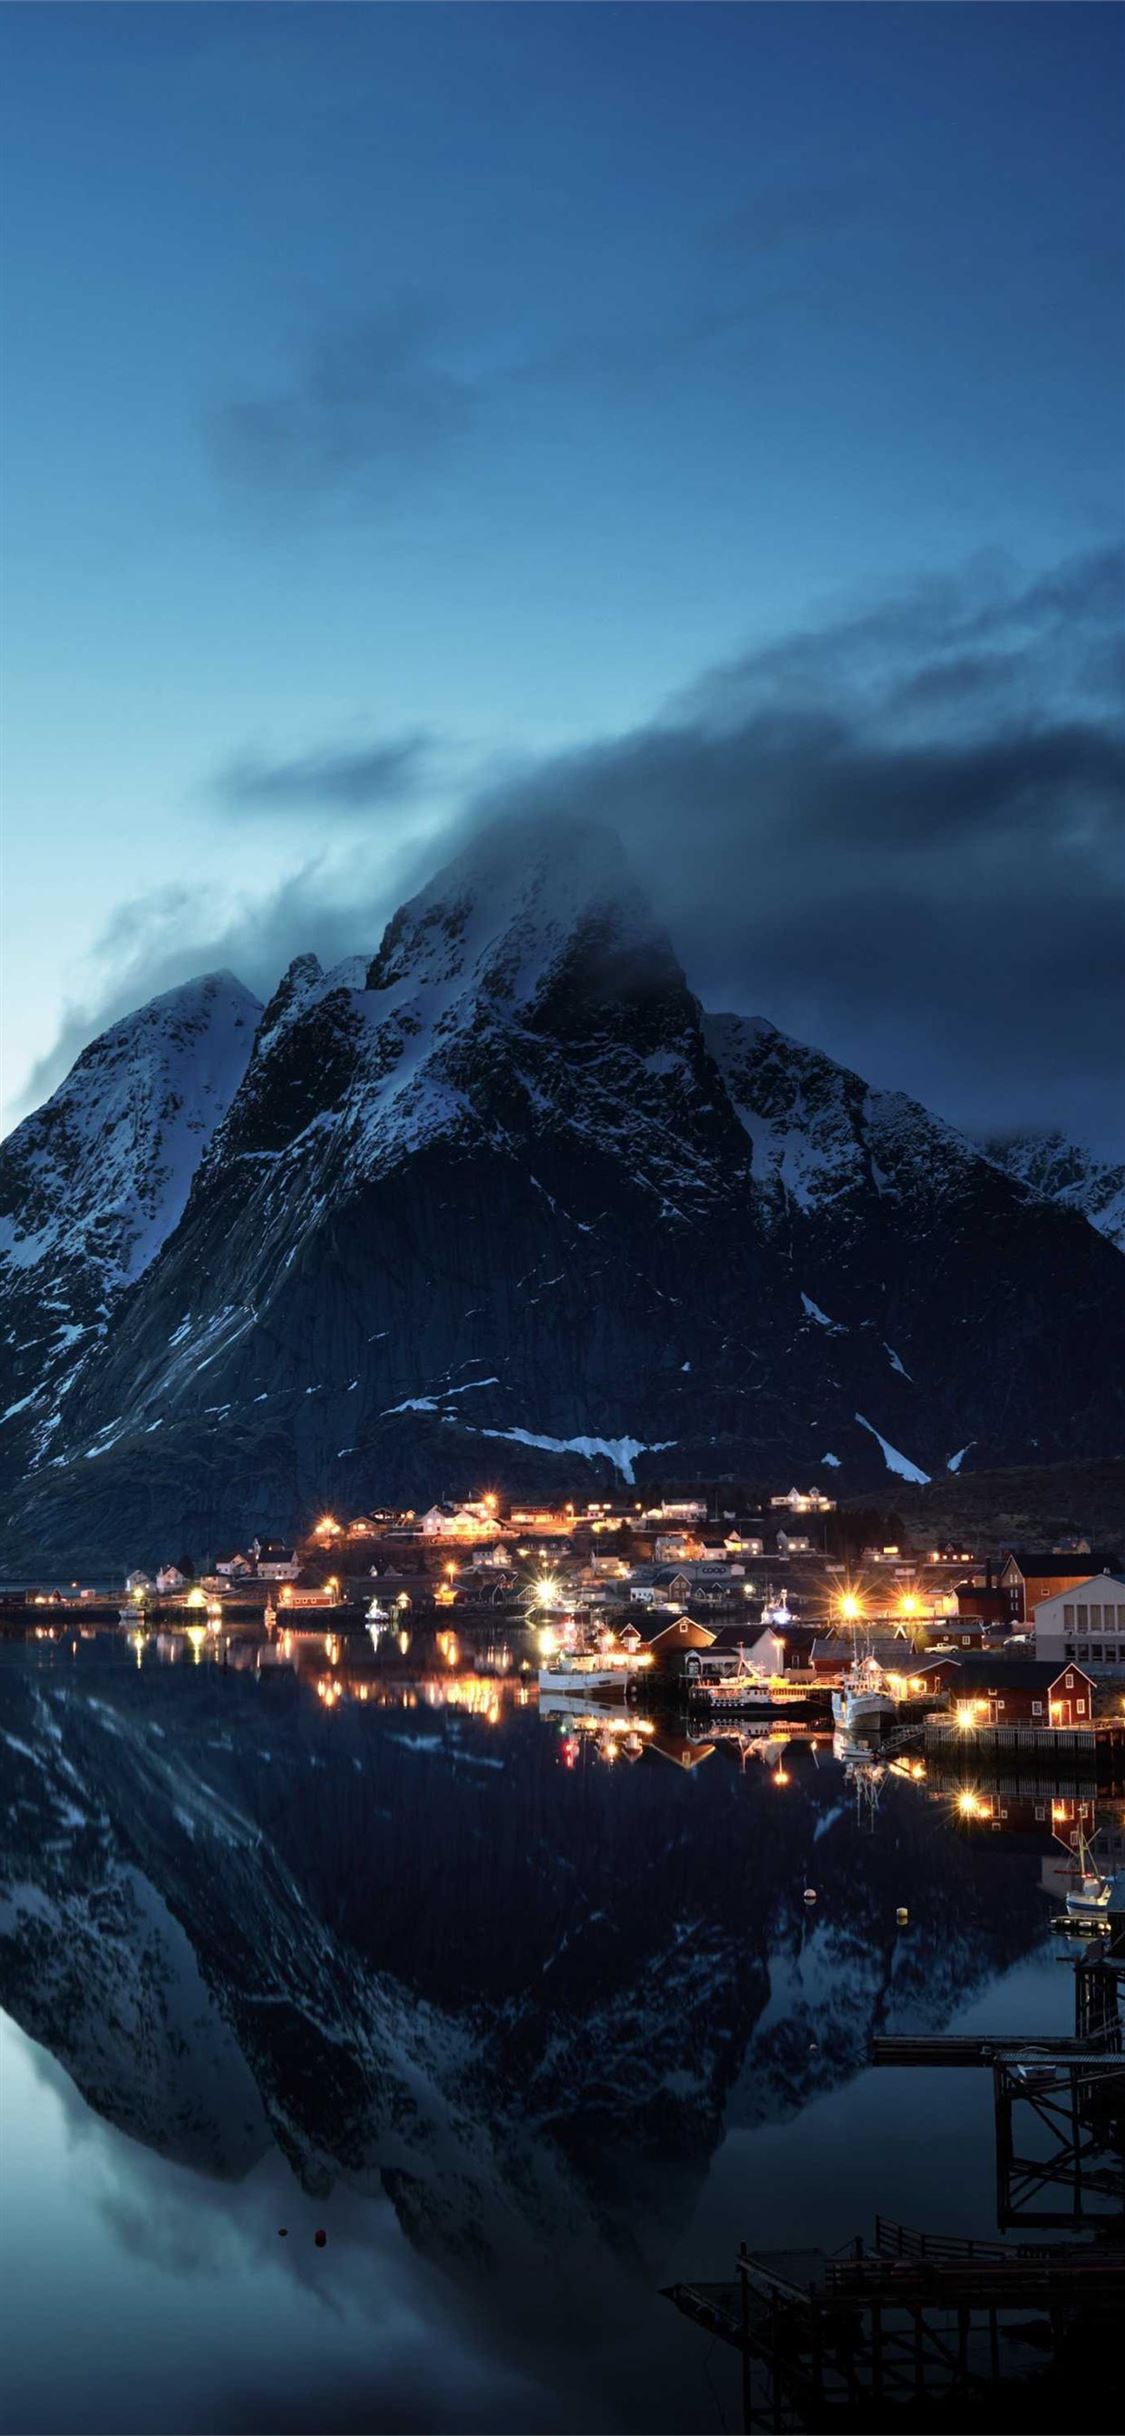 Hãy cùng nhìn ngắm những ngọn núi rợp tuyết đẹp nhất ở Na Uy với loạt ảnh Norway Lofoten Mountains. Tại đây, bạn sẽ được tận hưởng những khoảnh khắc tuyệt đẹp giữa tầm nhìn bao la của biển cả và vườn quốc gia. Đừng bỏ lỡ cơ hội khám phá thiên nhiên hoang sơ và đầy thú vị này!